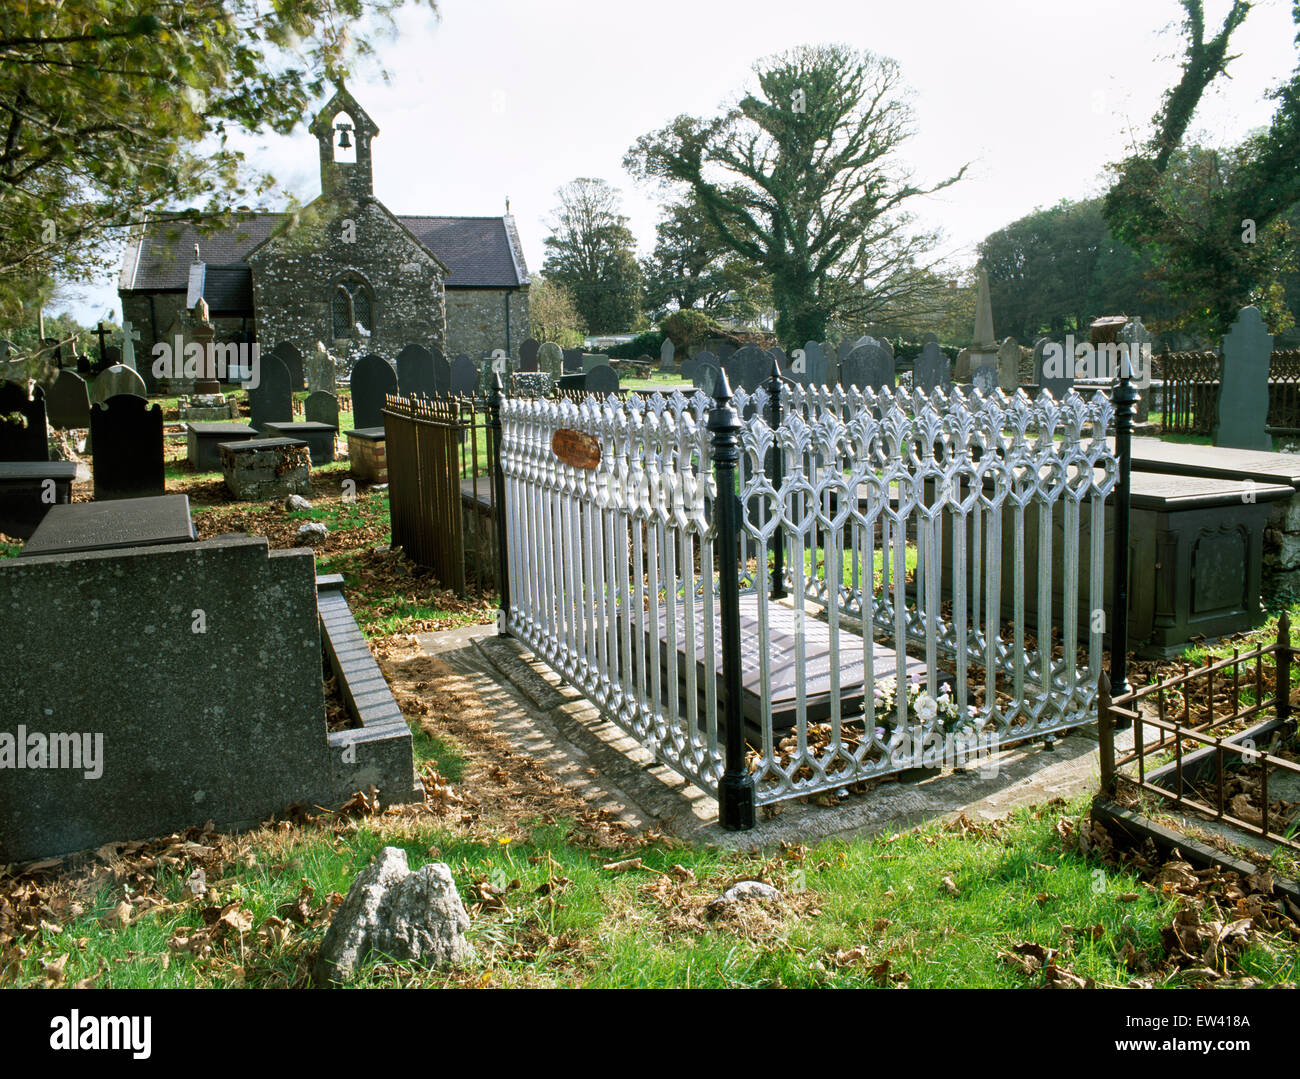 Tombe du révérend Stephen Roose Hughes, qui a organisé l'enterrement des victimes du naufrage de la Charte royale en 1859, Llanallgo, Anglesey, Pays de Galles Banque D'Images